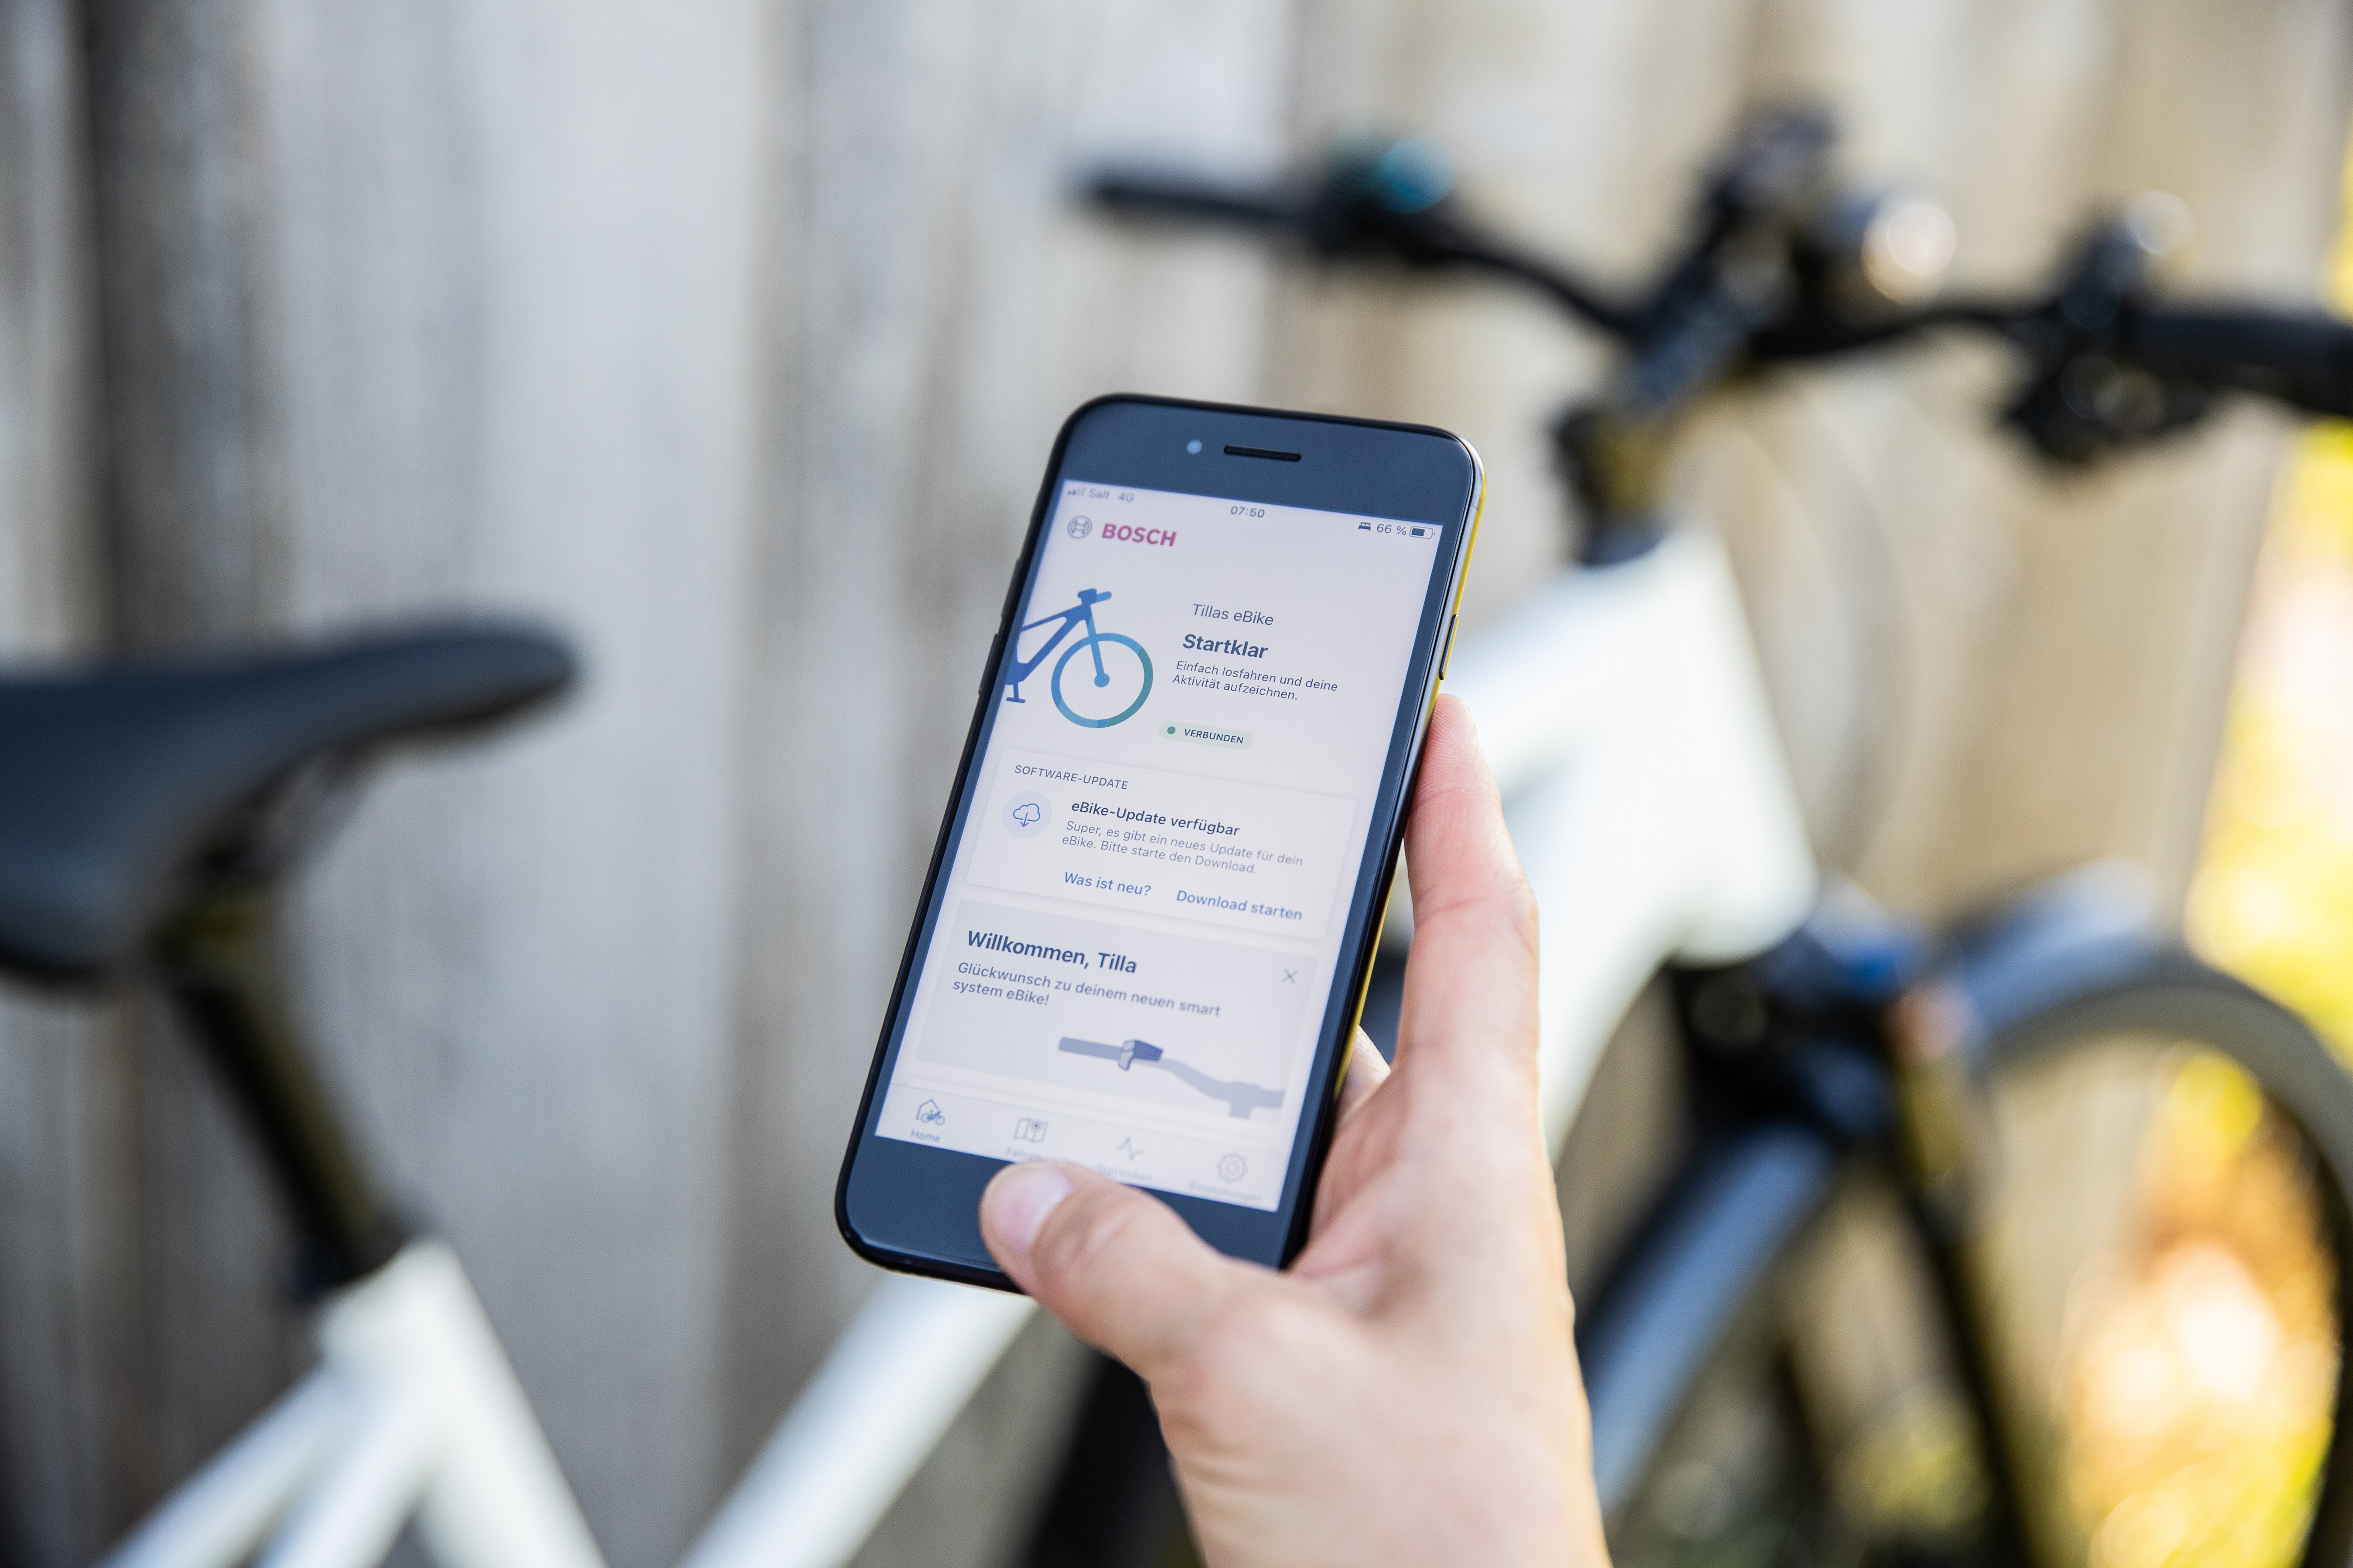 Diamant Zing CHC: Detailaufnahme App-Steuerung via Smartphone für E-Bike